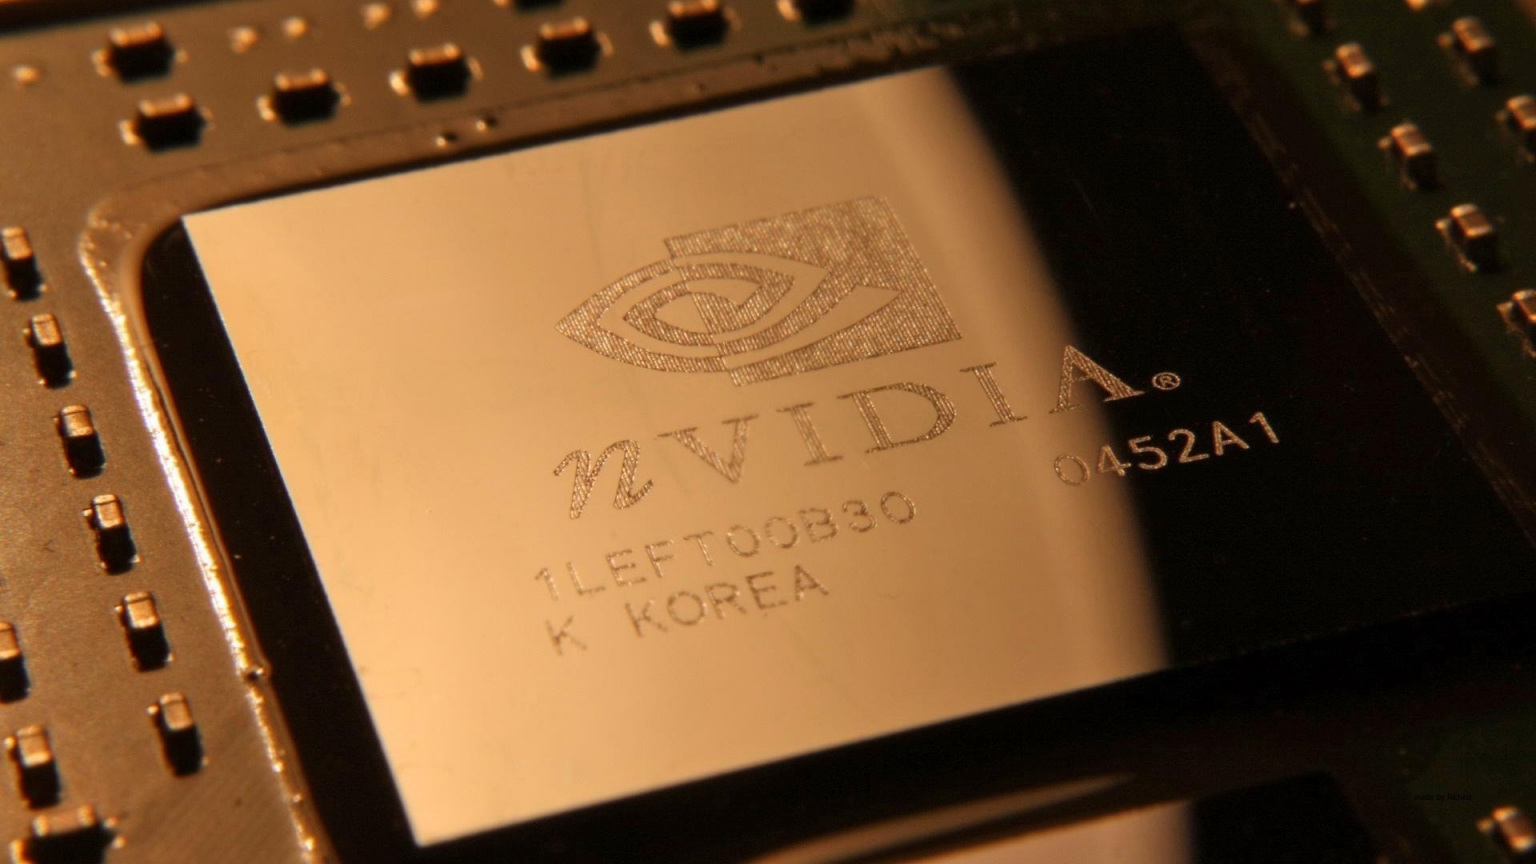 nVIdia Chipset for 1536 x 864 HDTV resolution